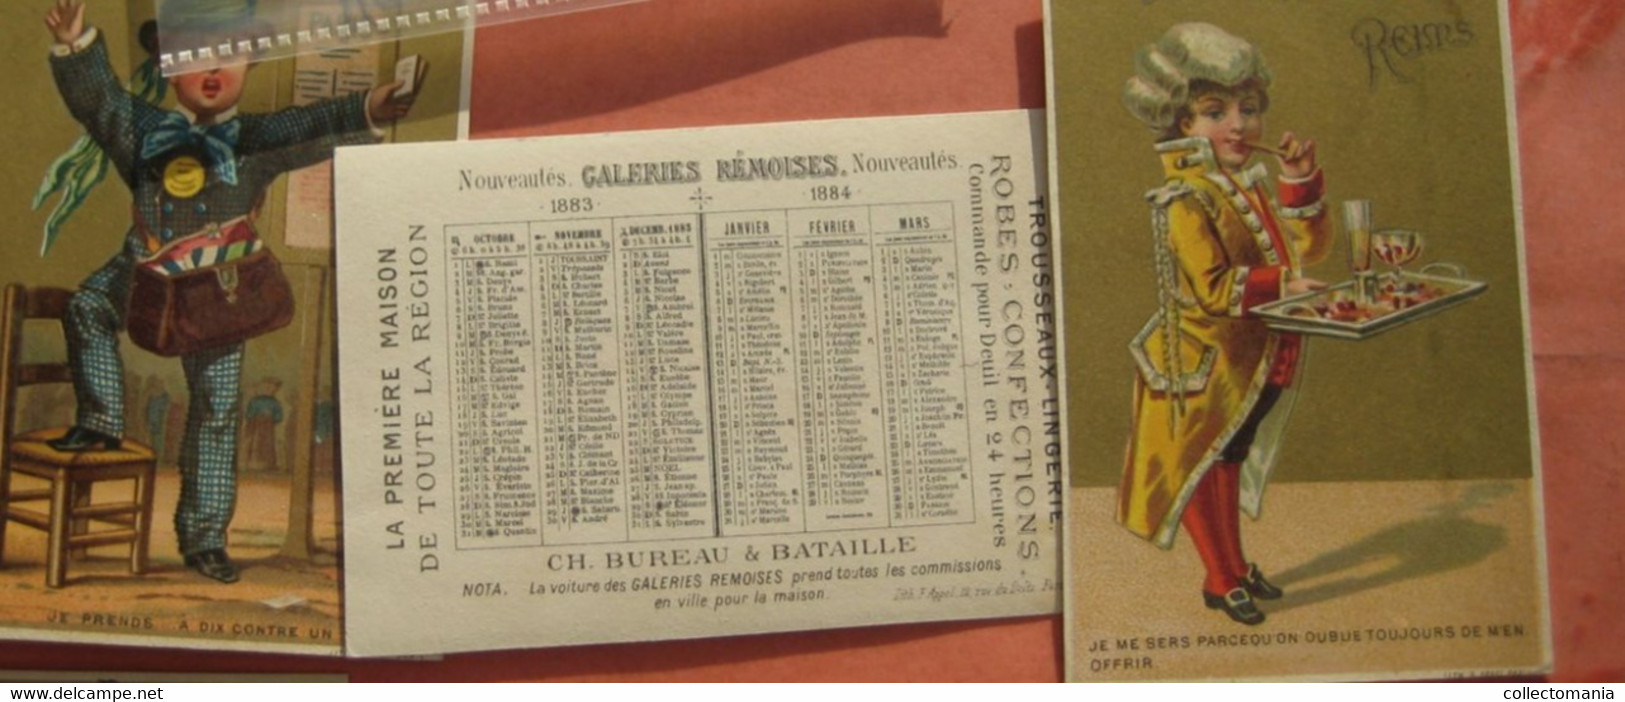 11 Cartes  Anno C1883 LITHO Chromos, Printer Imprimeur F.  APPEL Kalender - Very GOOD, 7cm5X11cm Reims Galeries REMOiSES - Klein Formaat: ...-1900